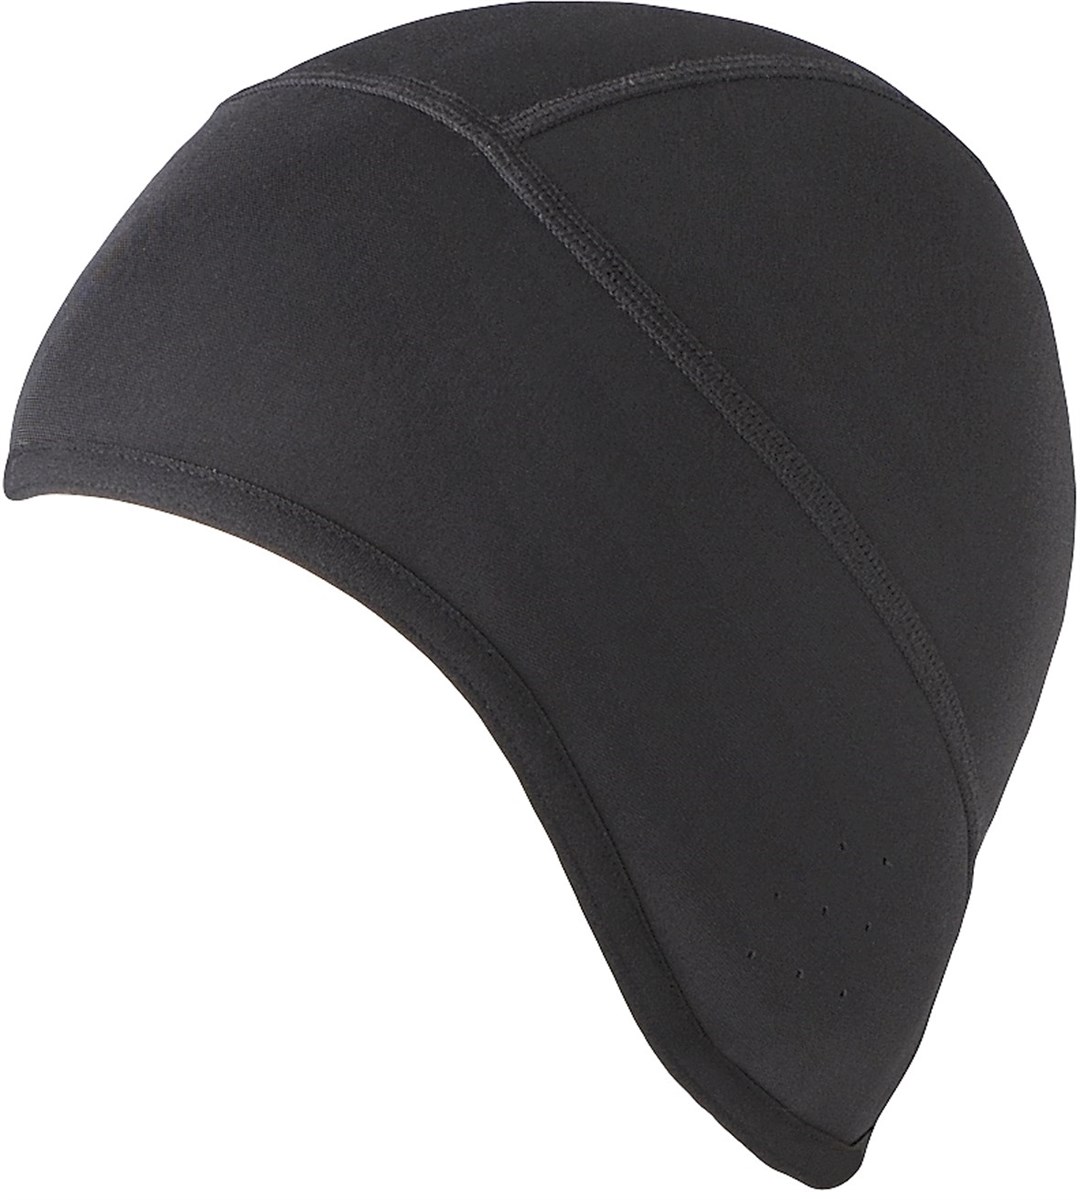 Shimano Under Helmet Cap